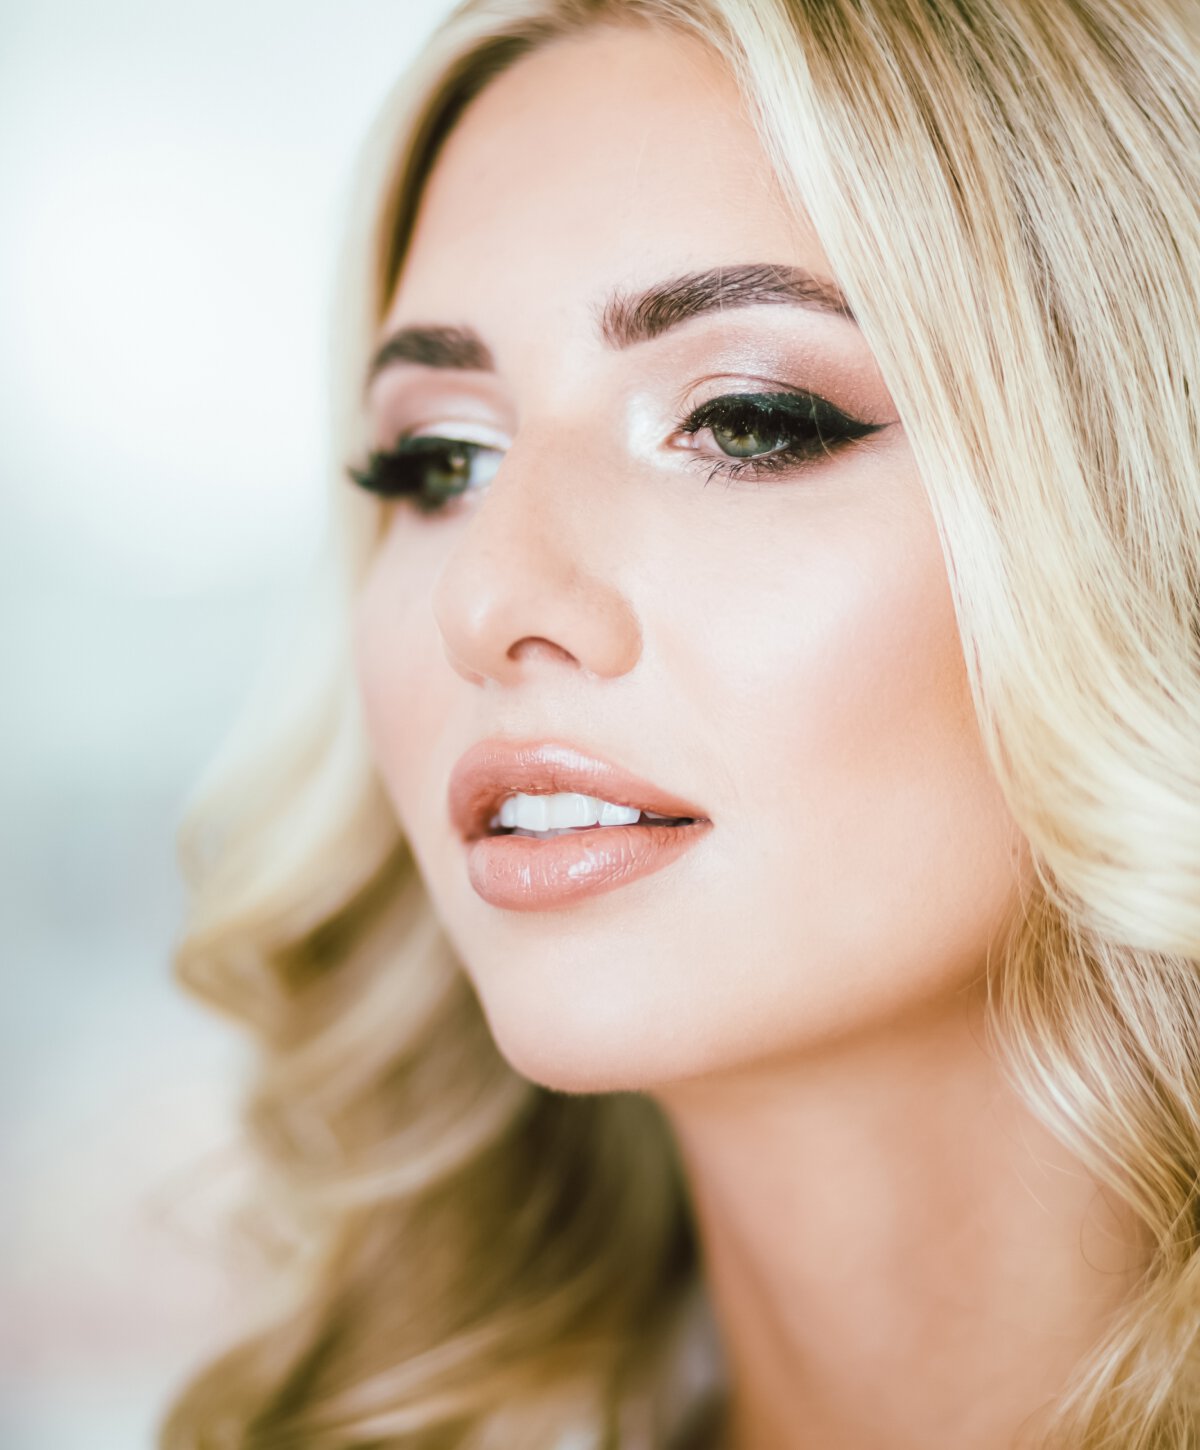 Carolina botox model with blonde hair